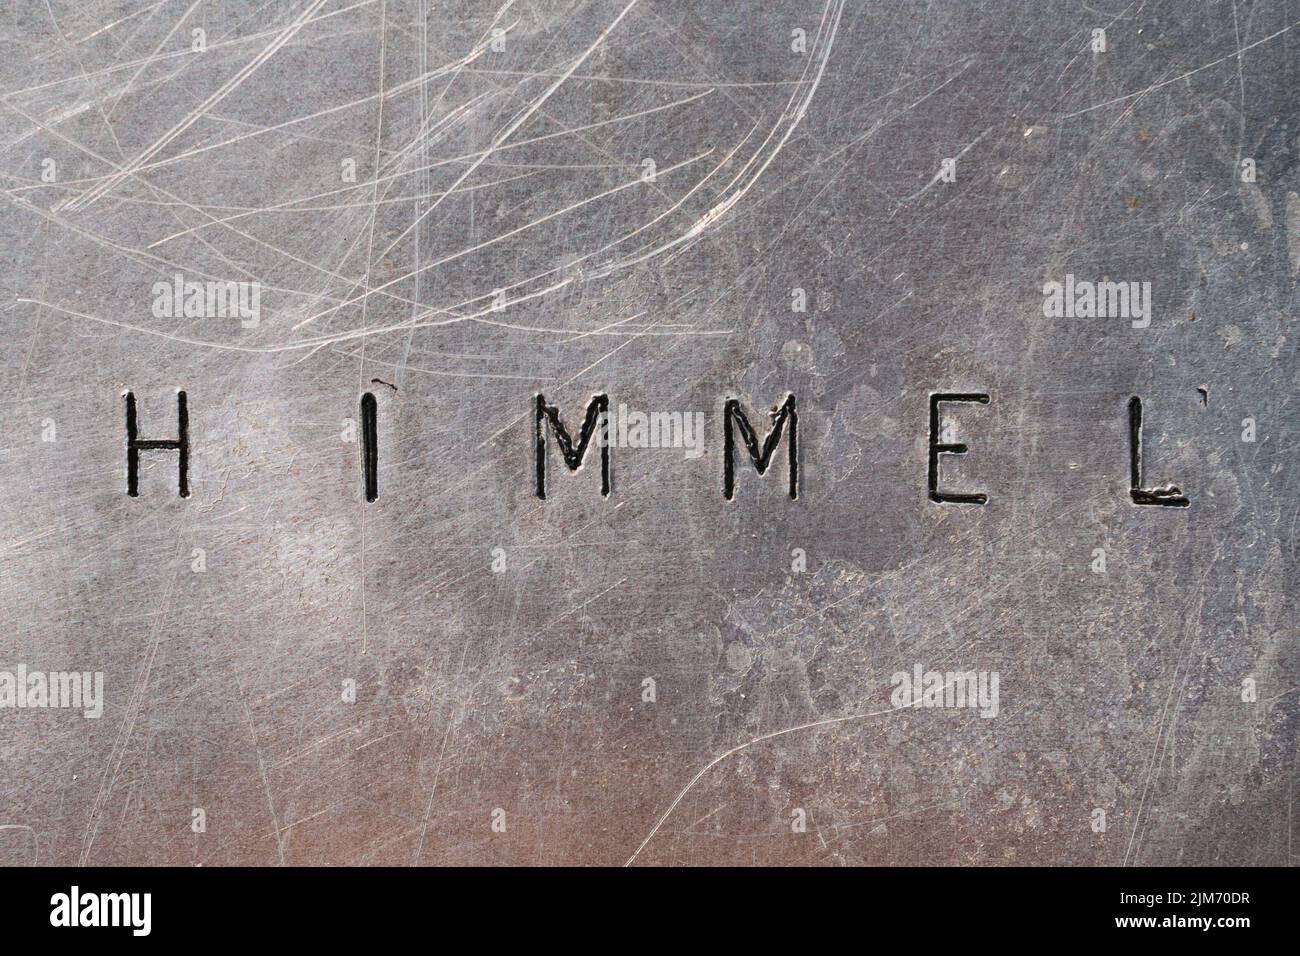 Das deutsche Wort 'Himmel' auf einer Metallplatte Stockfoto